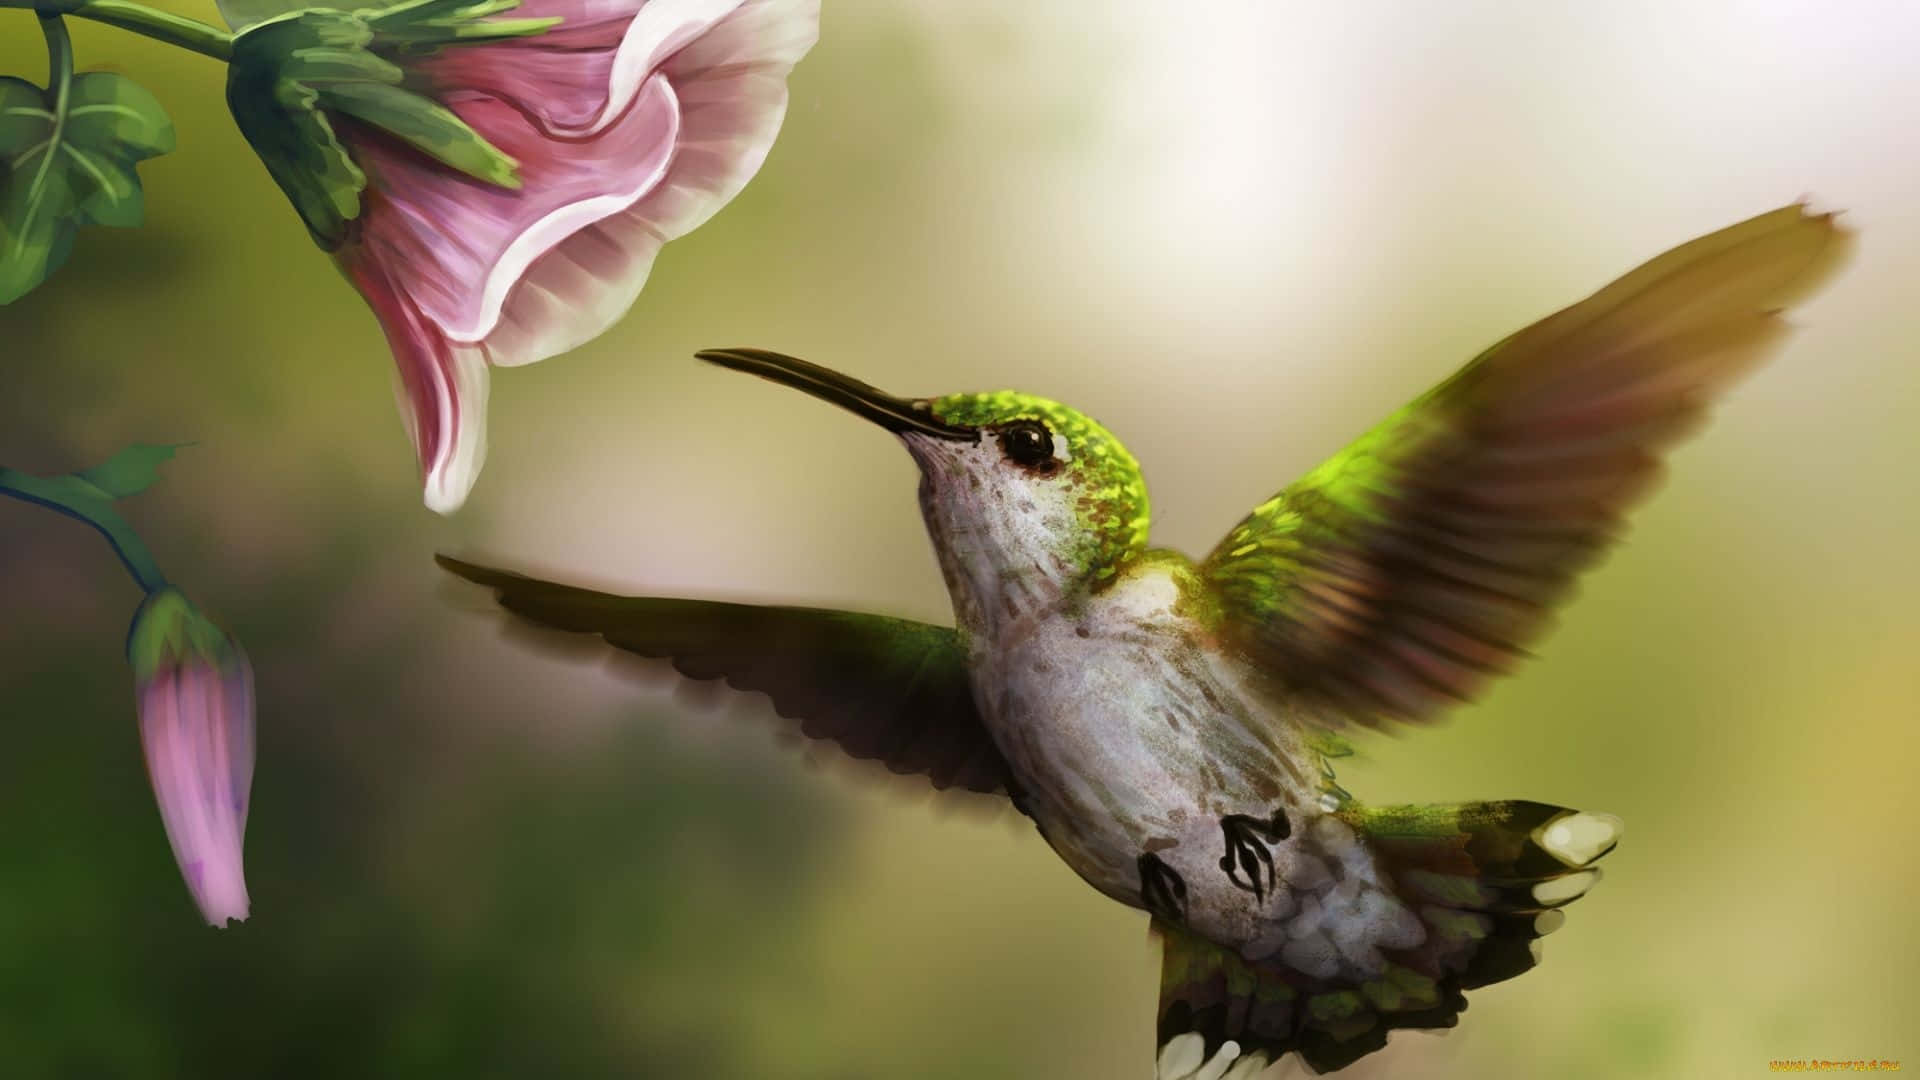 Fået Tættere Kig På Naturens Skønhed Med Dette Smukke Billede Af En Kolibri.